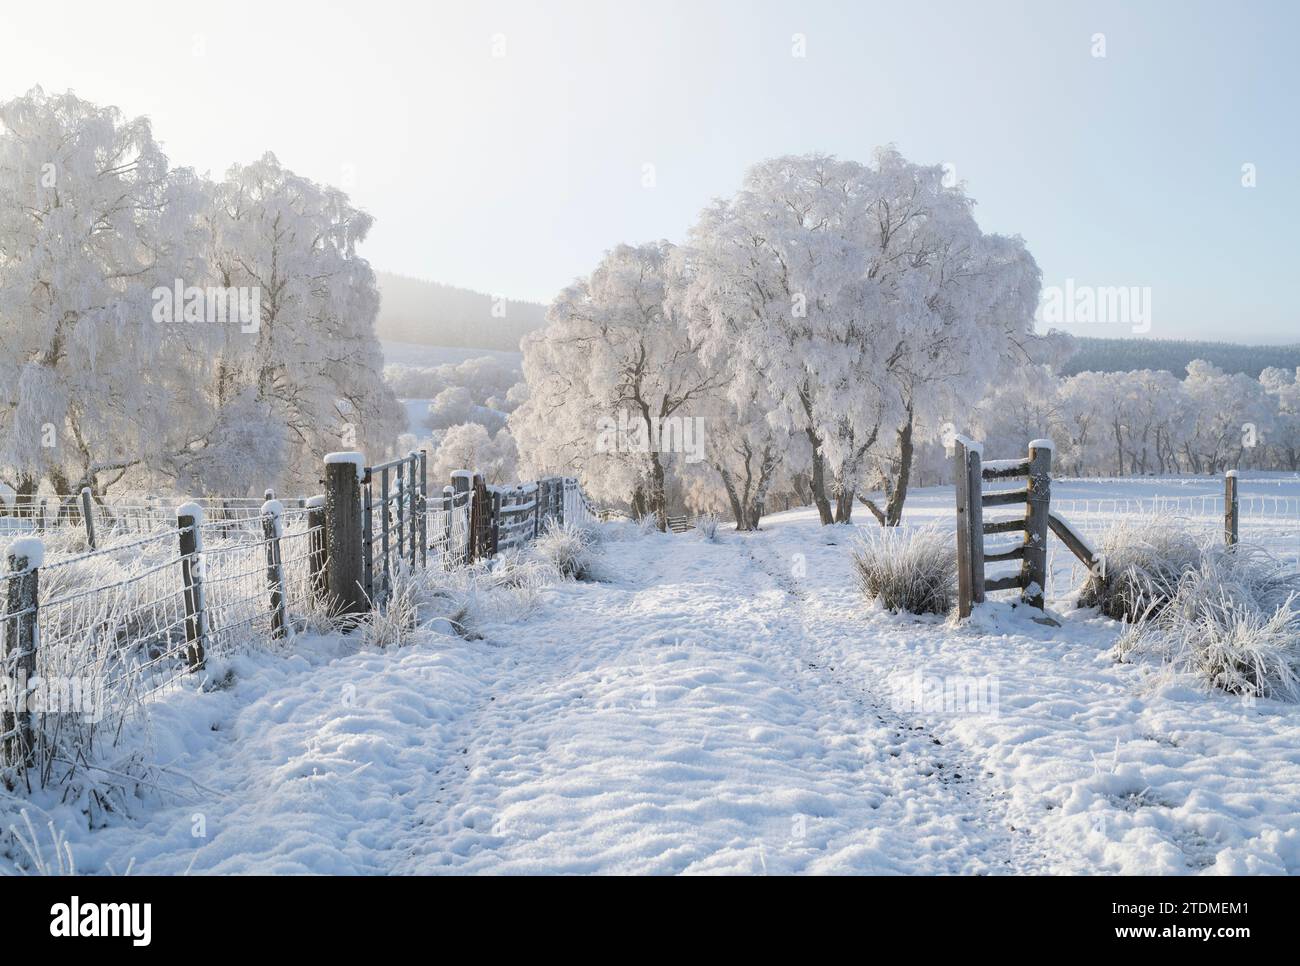 Neige de décembre, brume et gelée de canular sur les bouleaux argentés dans la campagne de la Moray. Morayshire, Écosse Banque D'Images